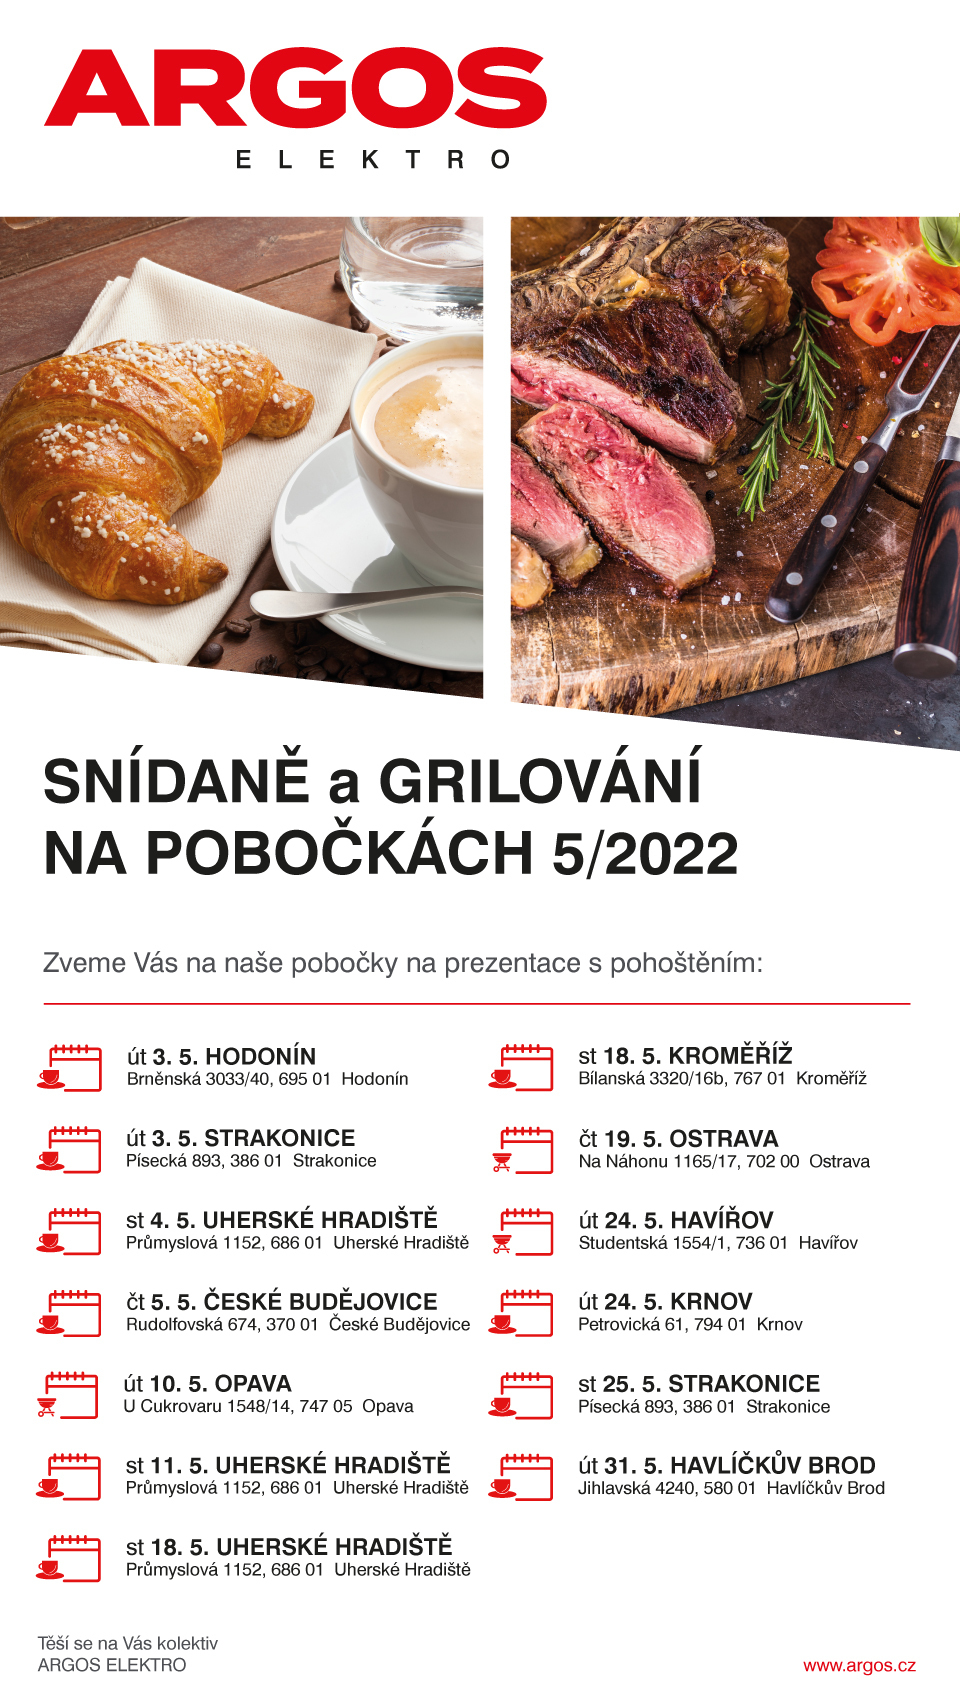 Snídaně a grilování na pobočkách ARGOS 5/2022